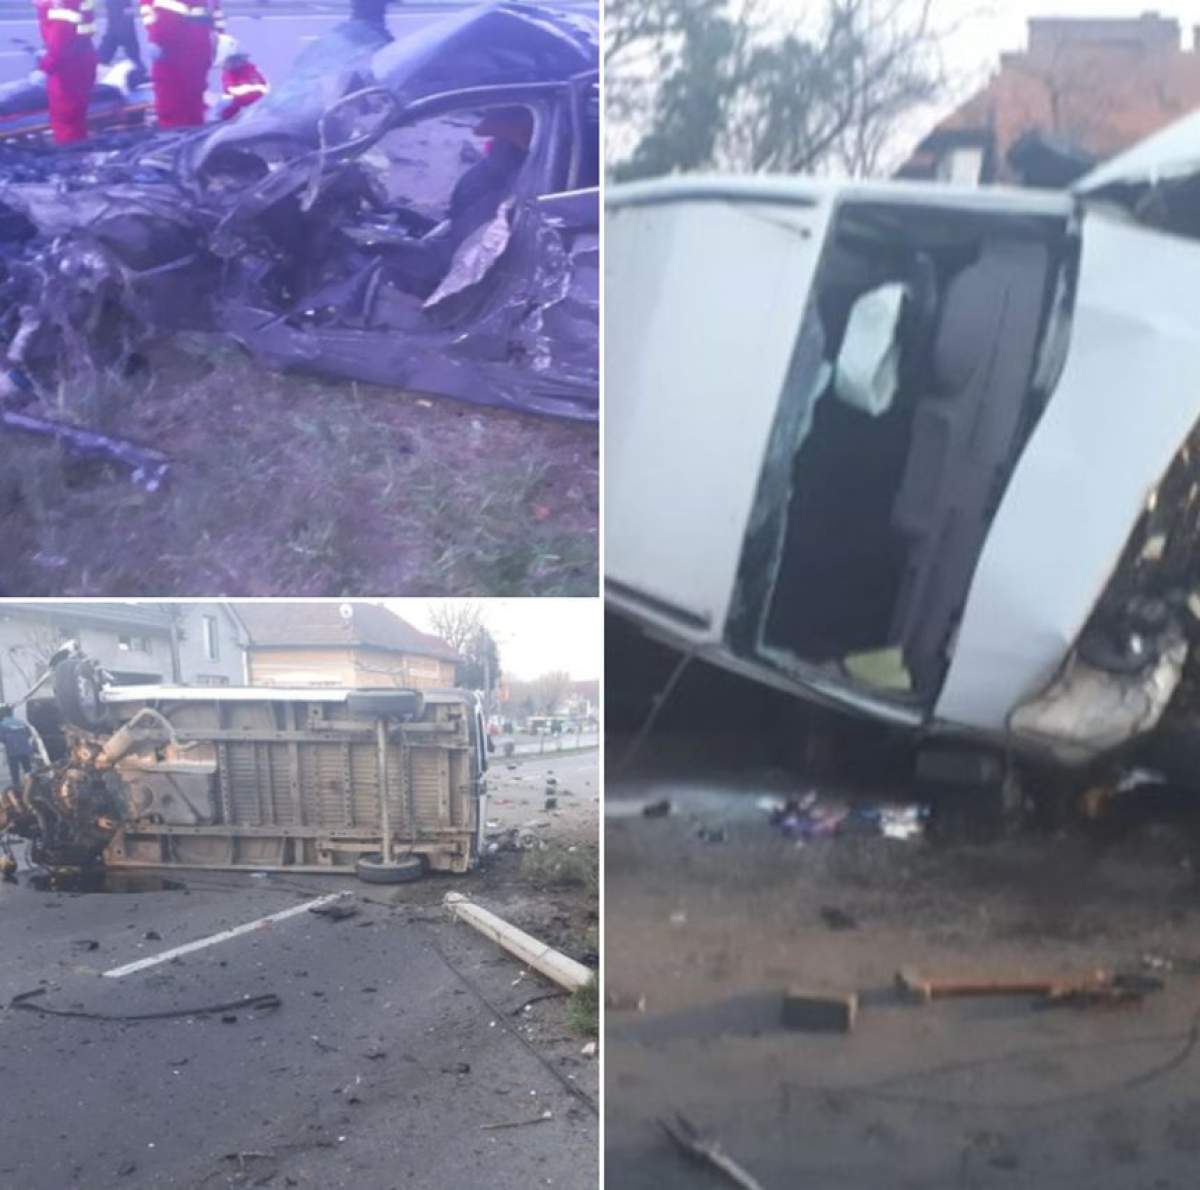 Accident teribil în această dimineaţă, în Târgu Mureş. Două persoane au murit